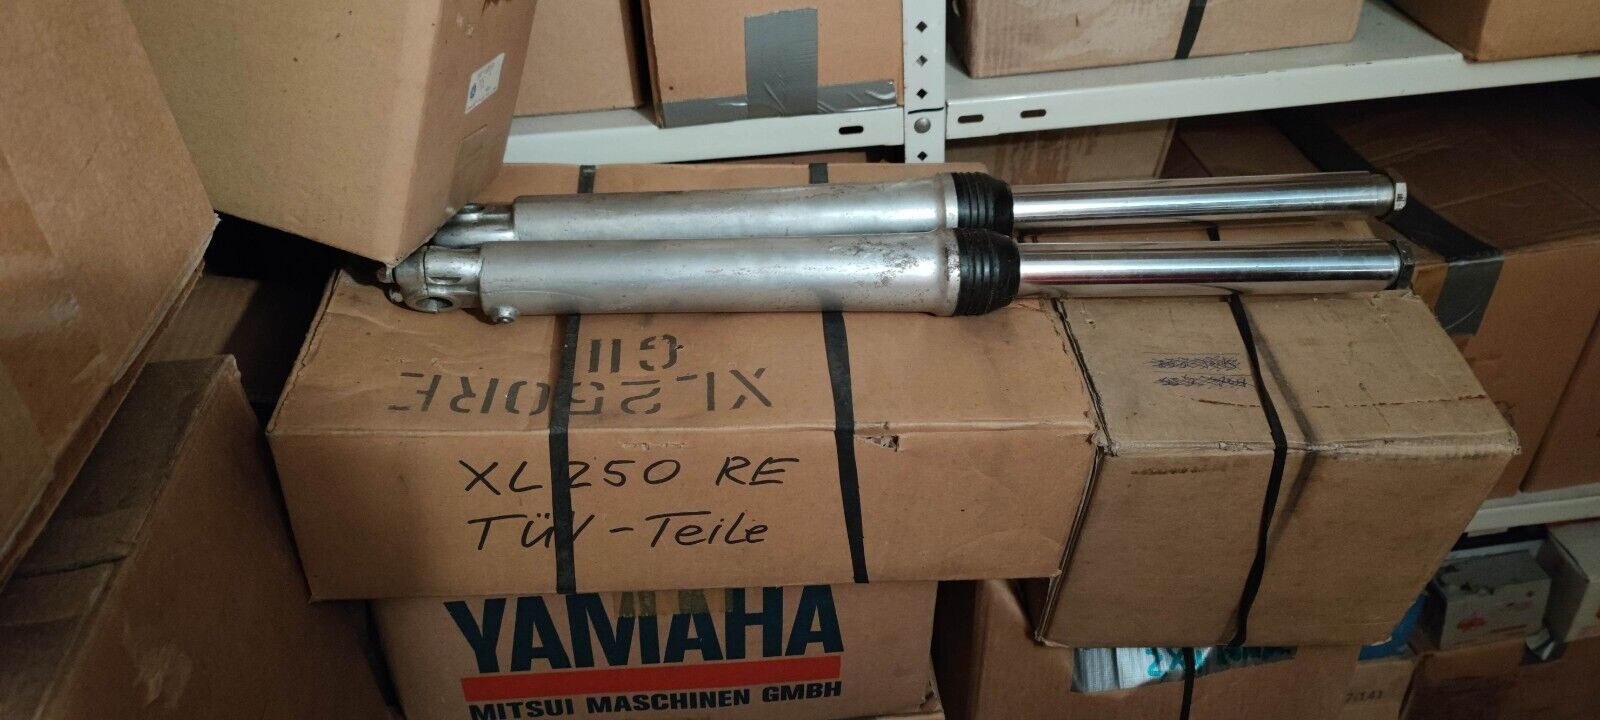 NOS Ersatzteile parts Yamaha DT80LC2 LCII 1x Auspuff Schalldaempfer muffler pipe 9